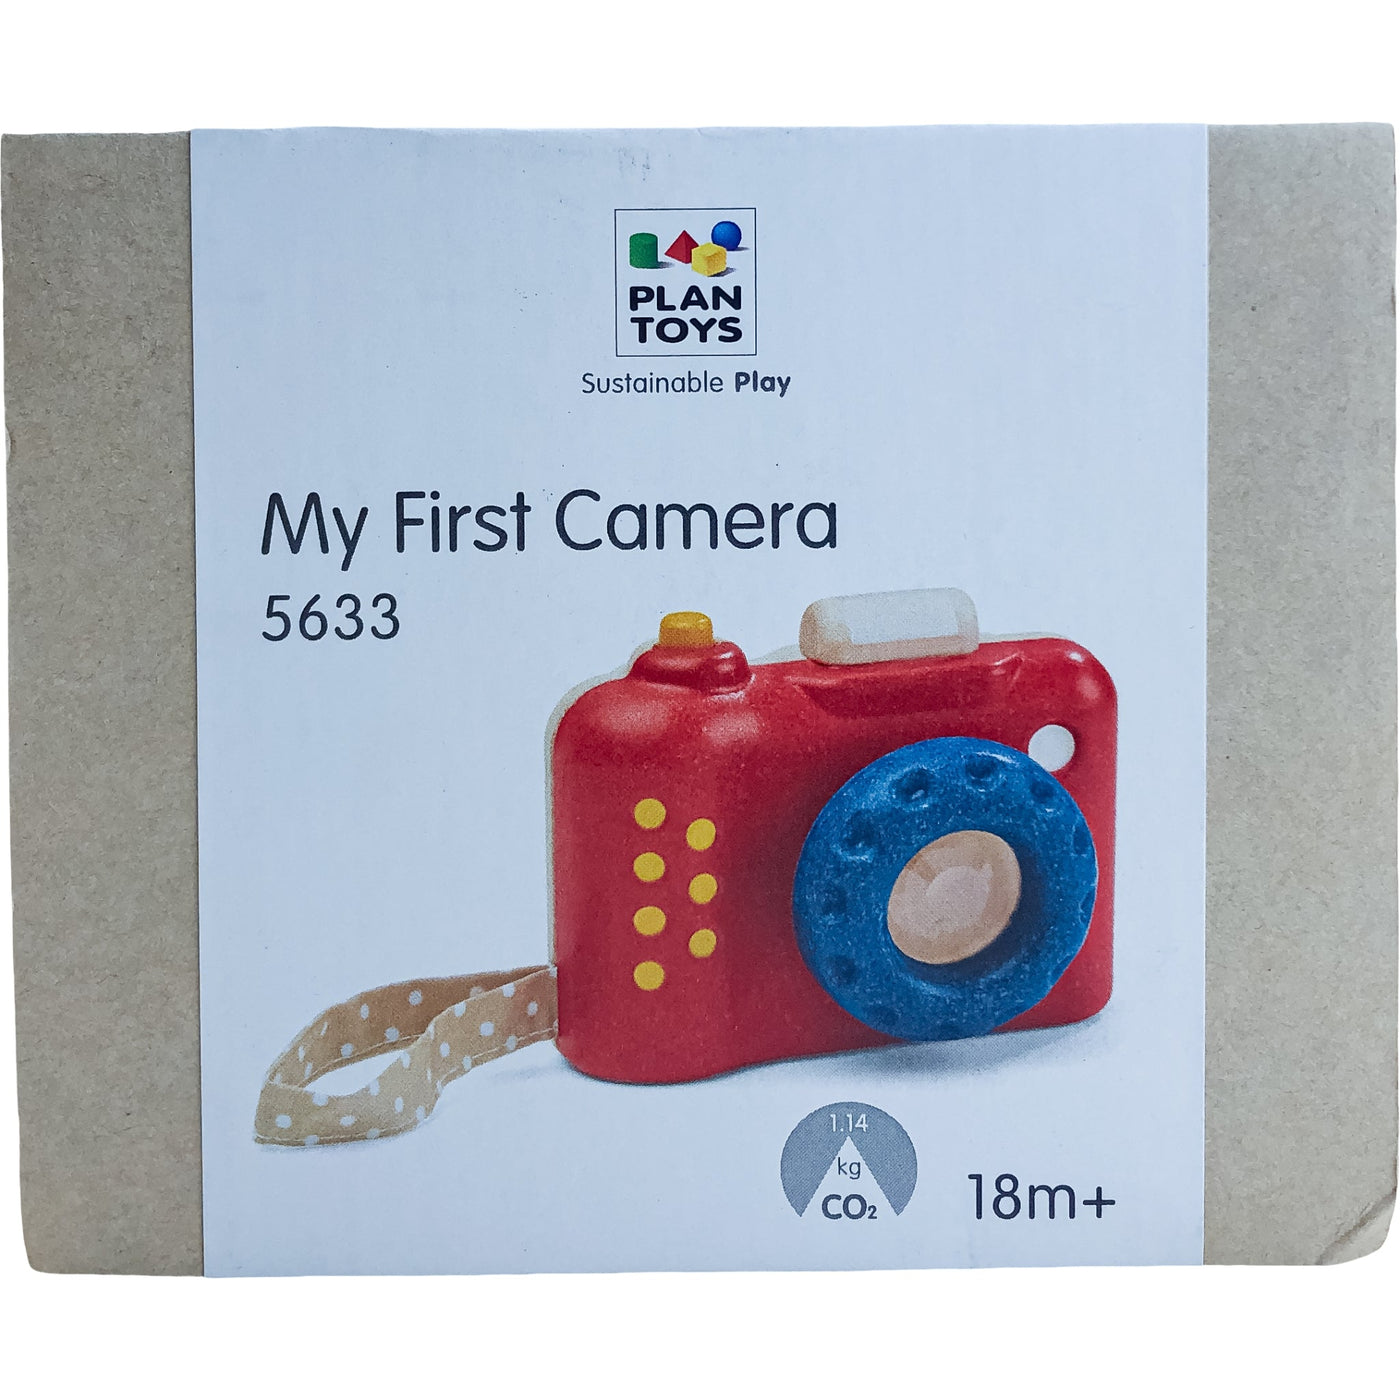 Appareil photo "Mon premier appareil photo" de seconde main en bois d'hévéa pour enfant à partir de 18 mois - photo principale